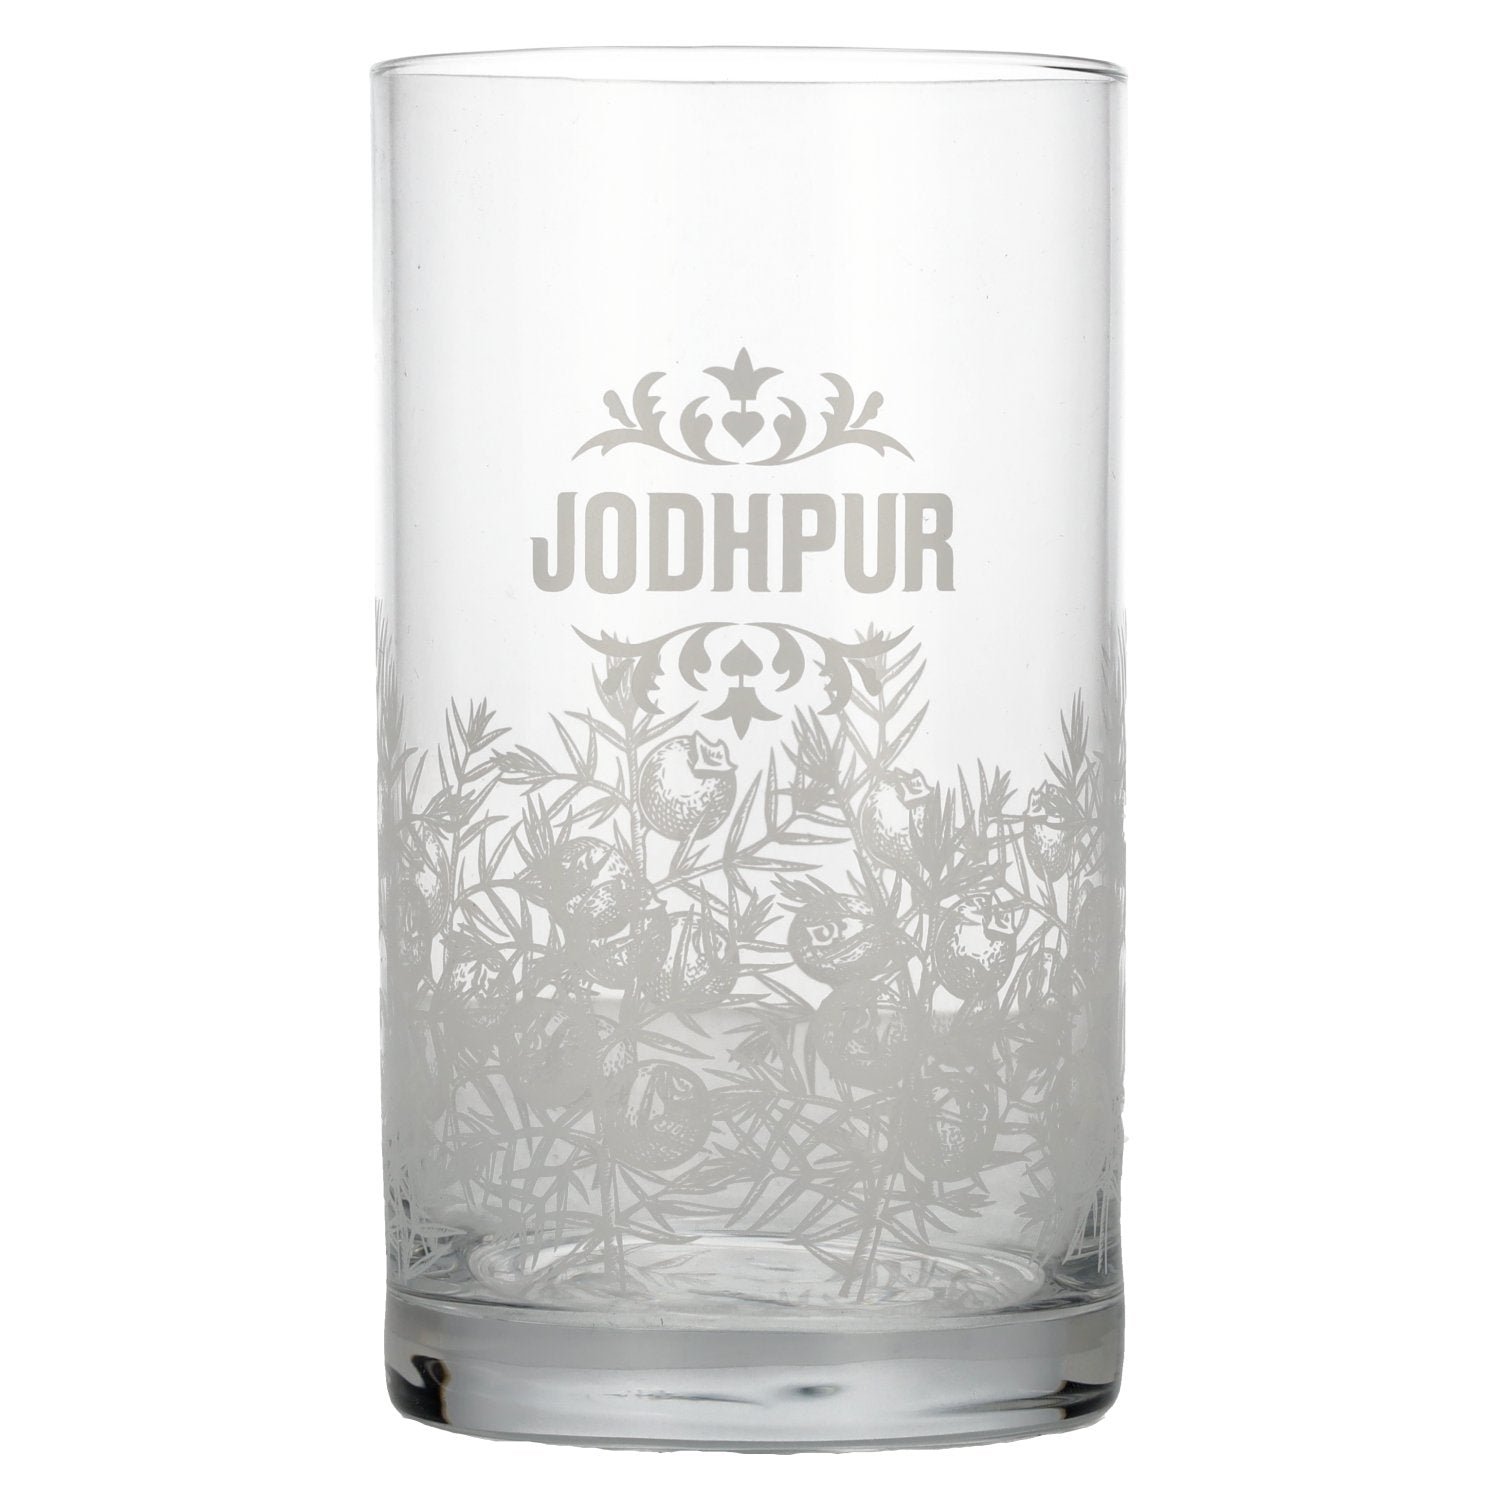 Jodhpur glass without calibration